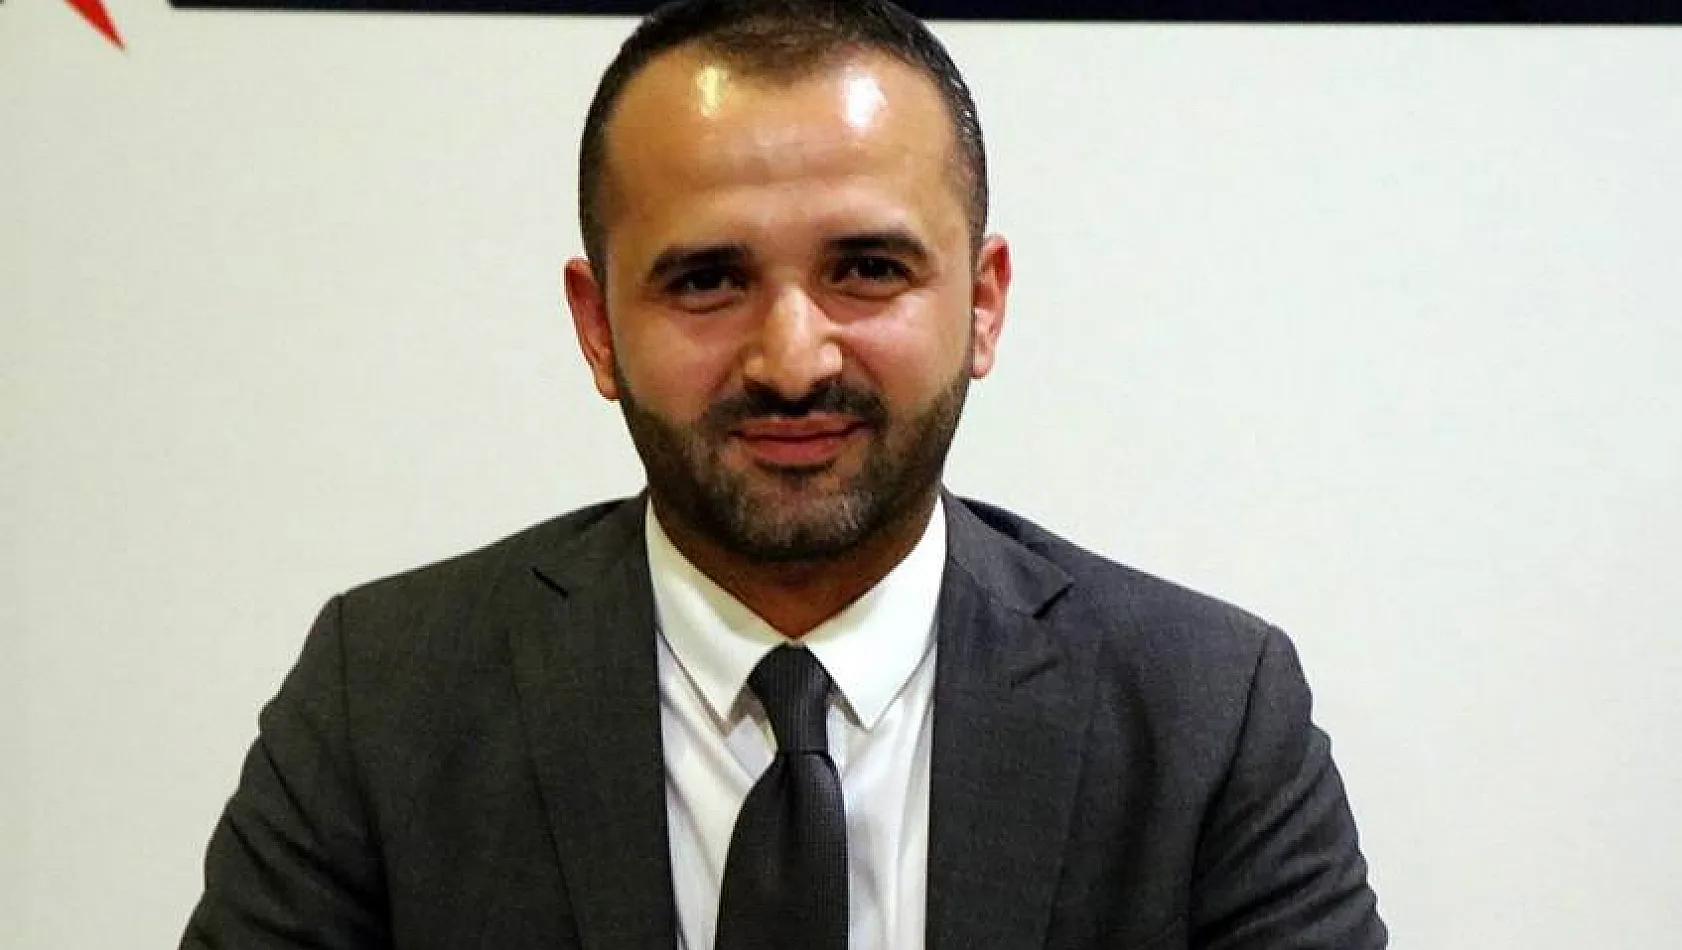 Grup Avenir Türkiye Direktörü Arık: 'Esas yatırım gayrimenkuldür'